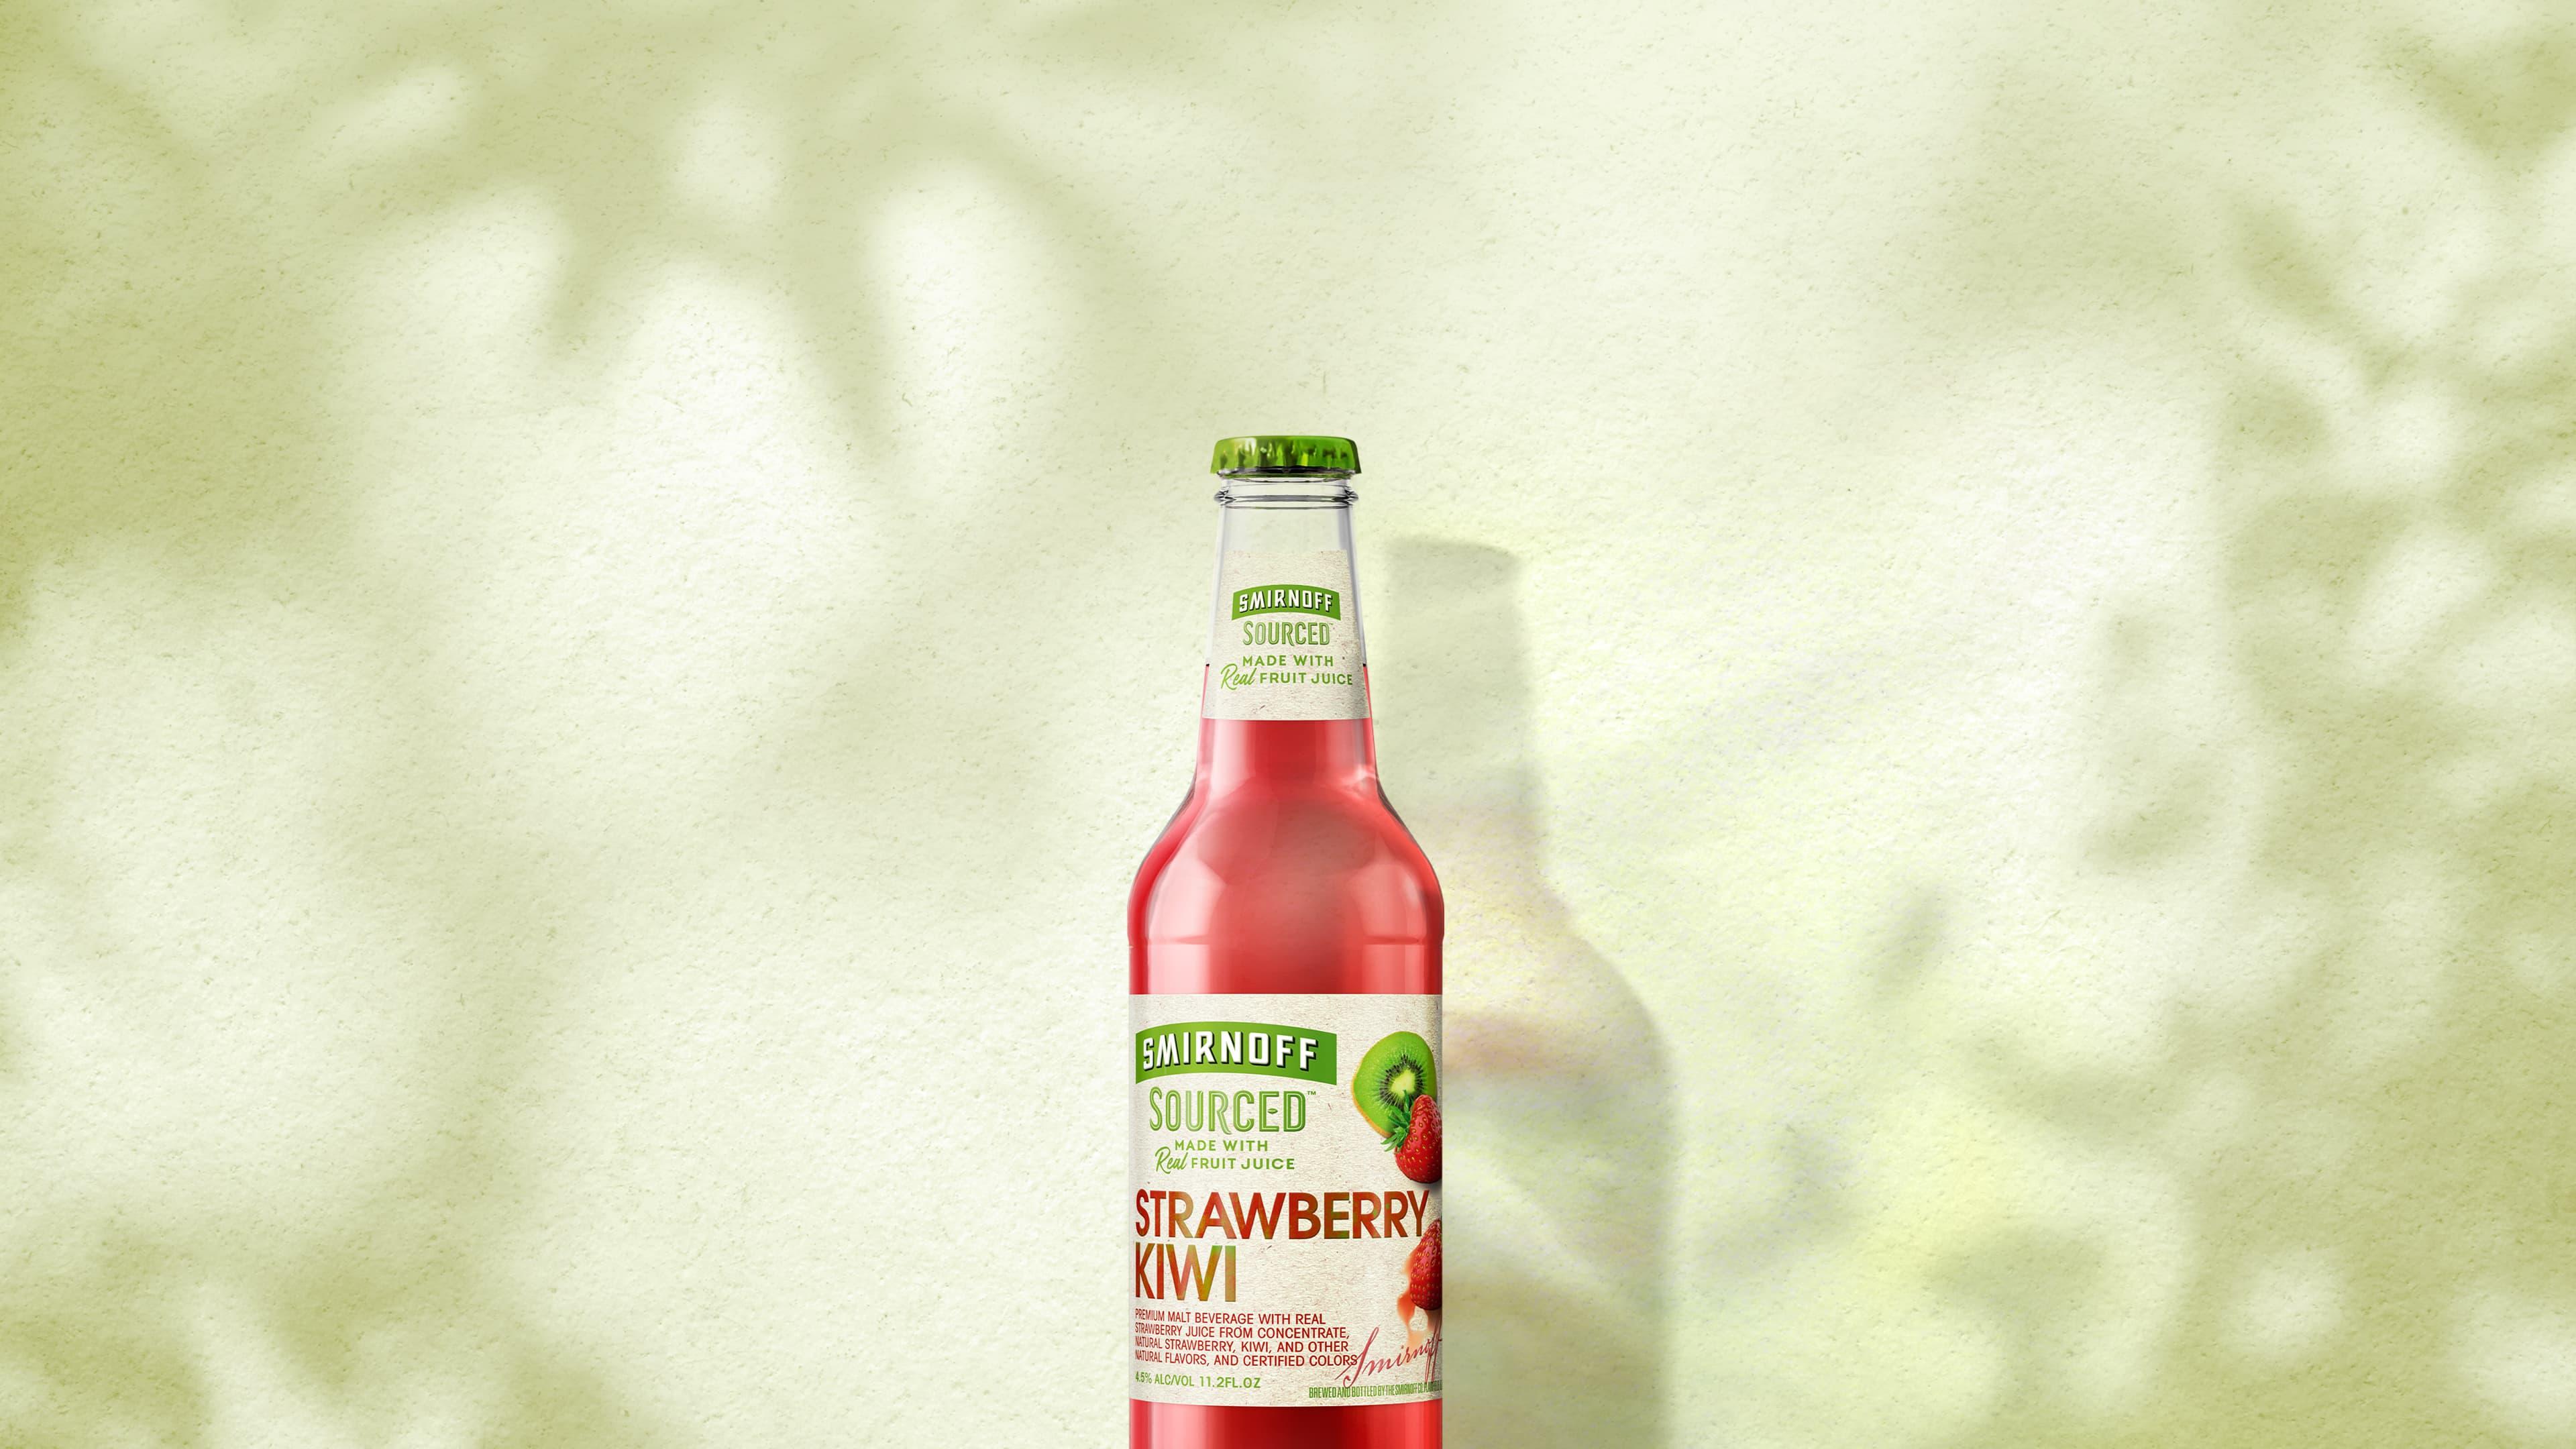 Smirnoff Sourced Strawberry Kiwi on tropical background